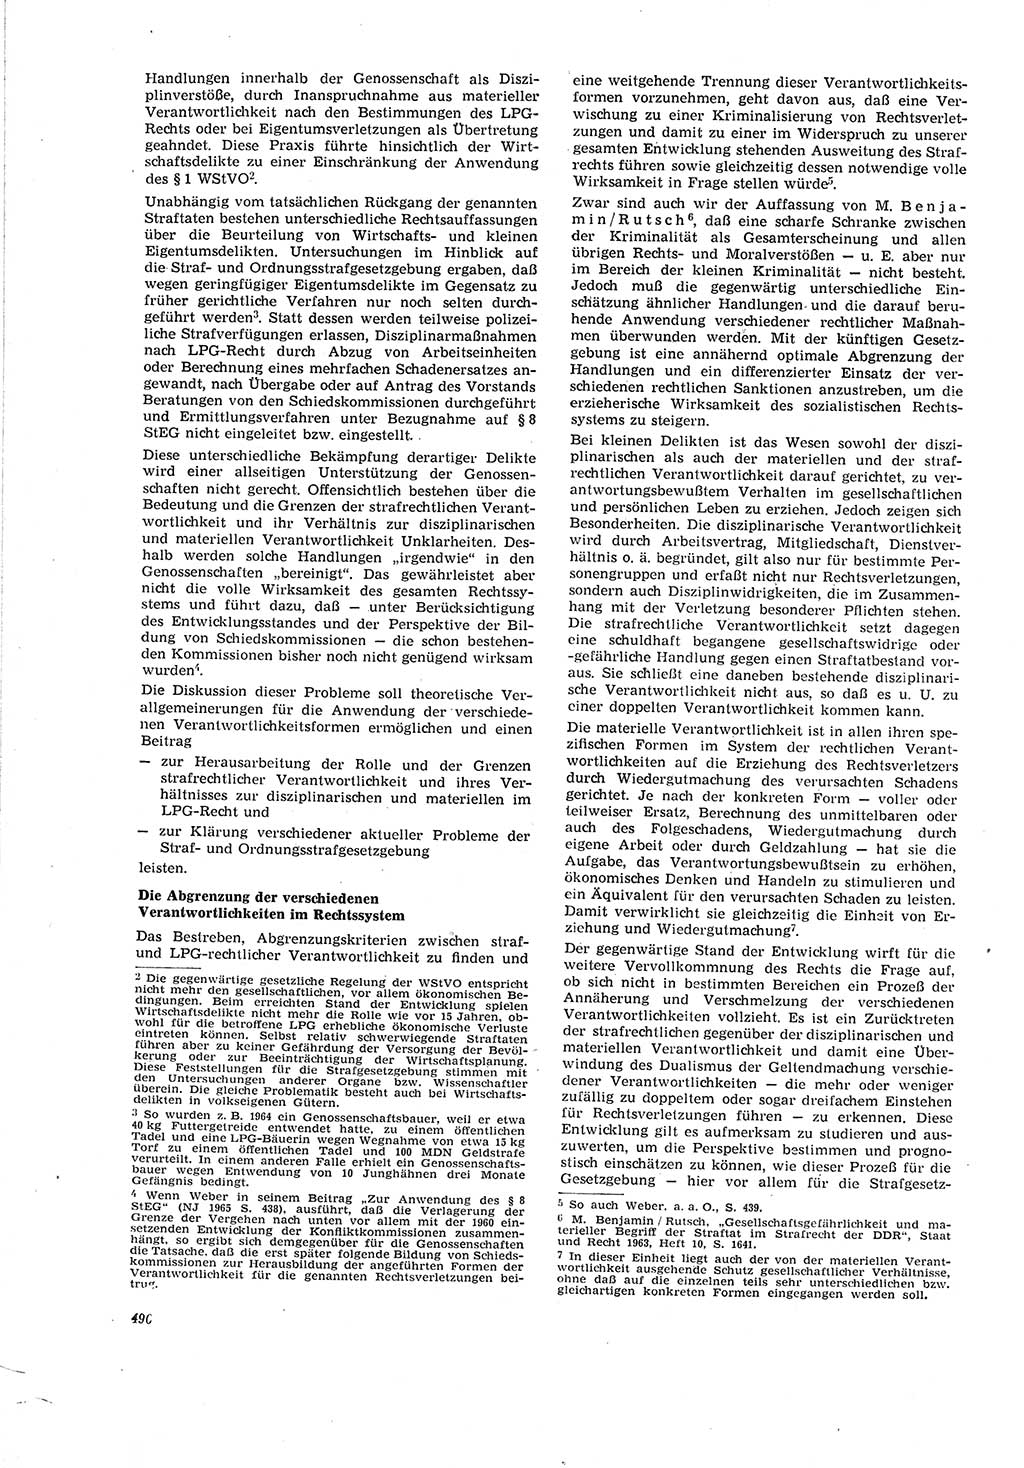 Neue Justiz (NJ), Zeitschrift für Recht und Rechtswissenschaft [Deutsche Demokratische Republik (DDR)], 20. Jahrgang 1966, Seite 496 (NJ DDR 1966, S. 496)